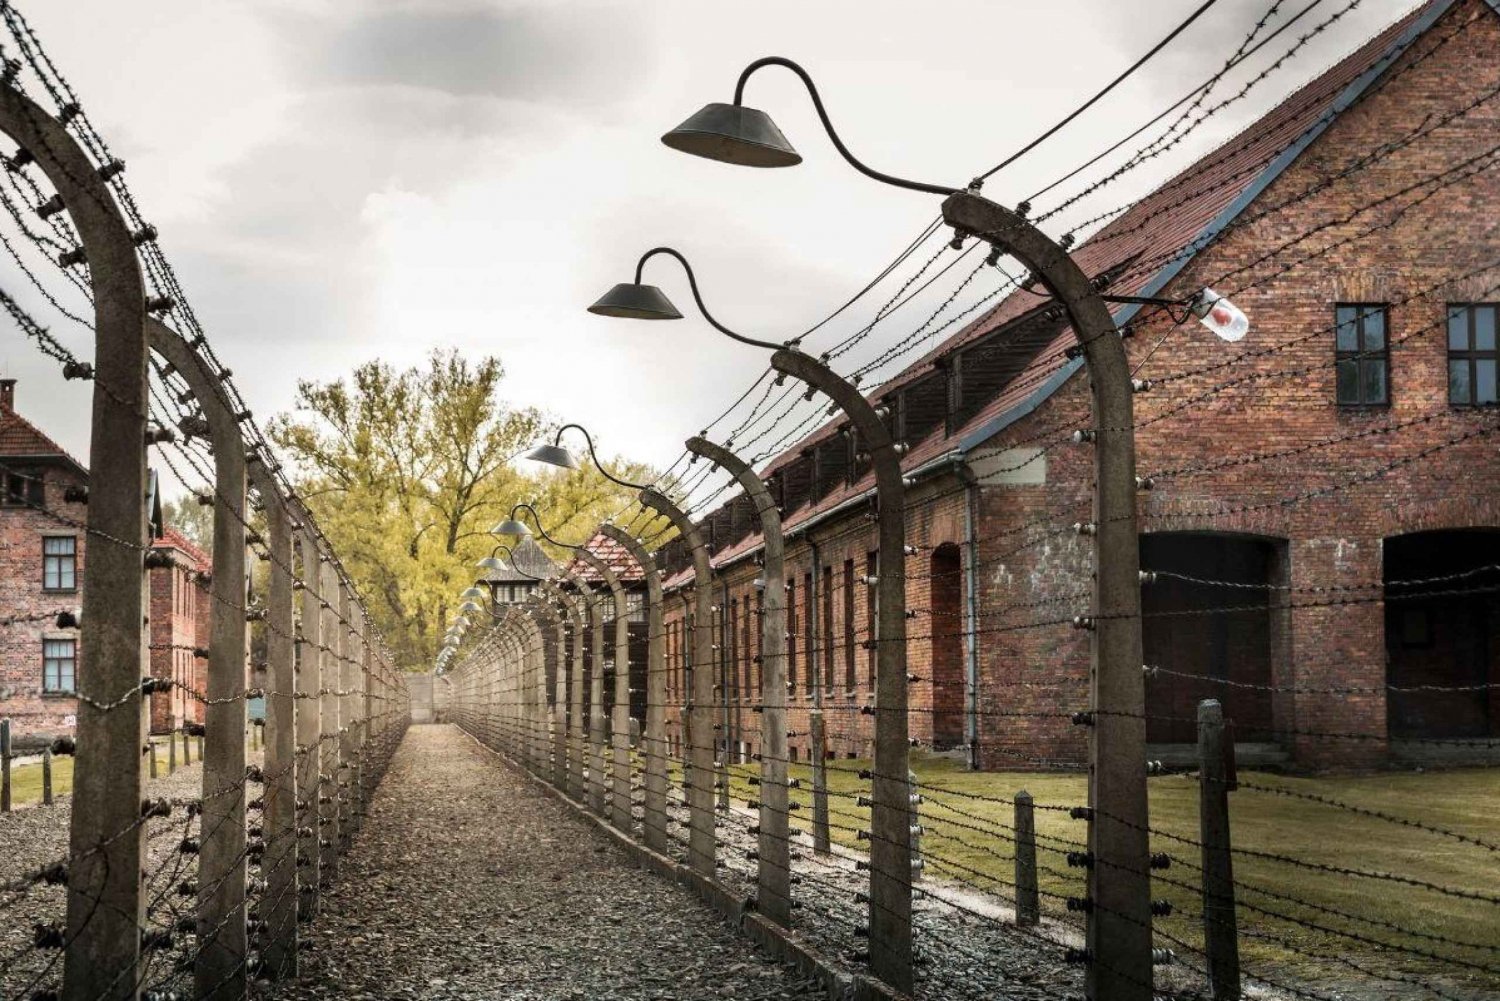 Wiedeń: Wycieczka do Auschwitz Birkenau